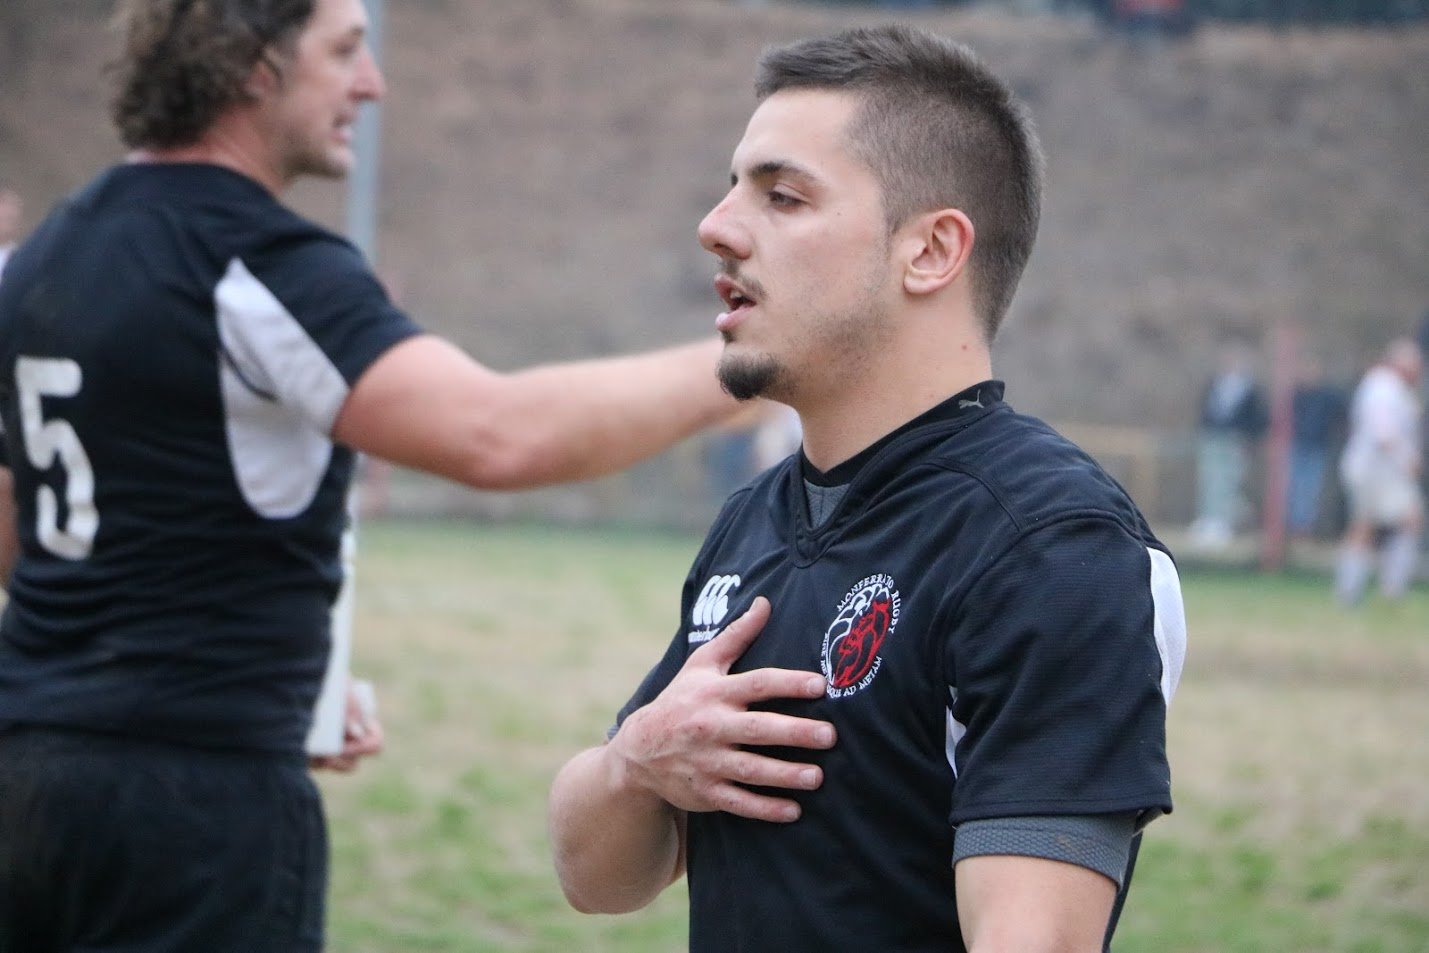 Alessandria Rugby: torna Jacopo Zucconi. “Qui per avere nuovi stimoli”